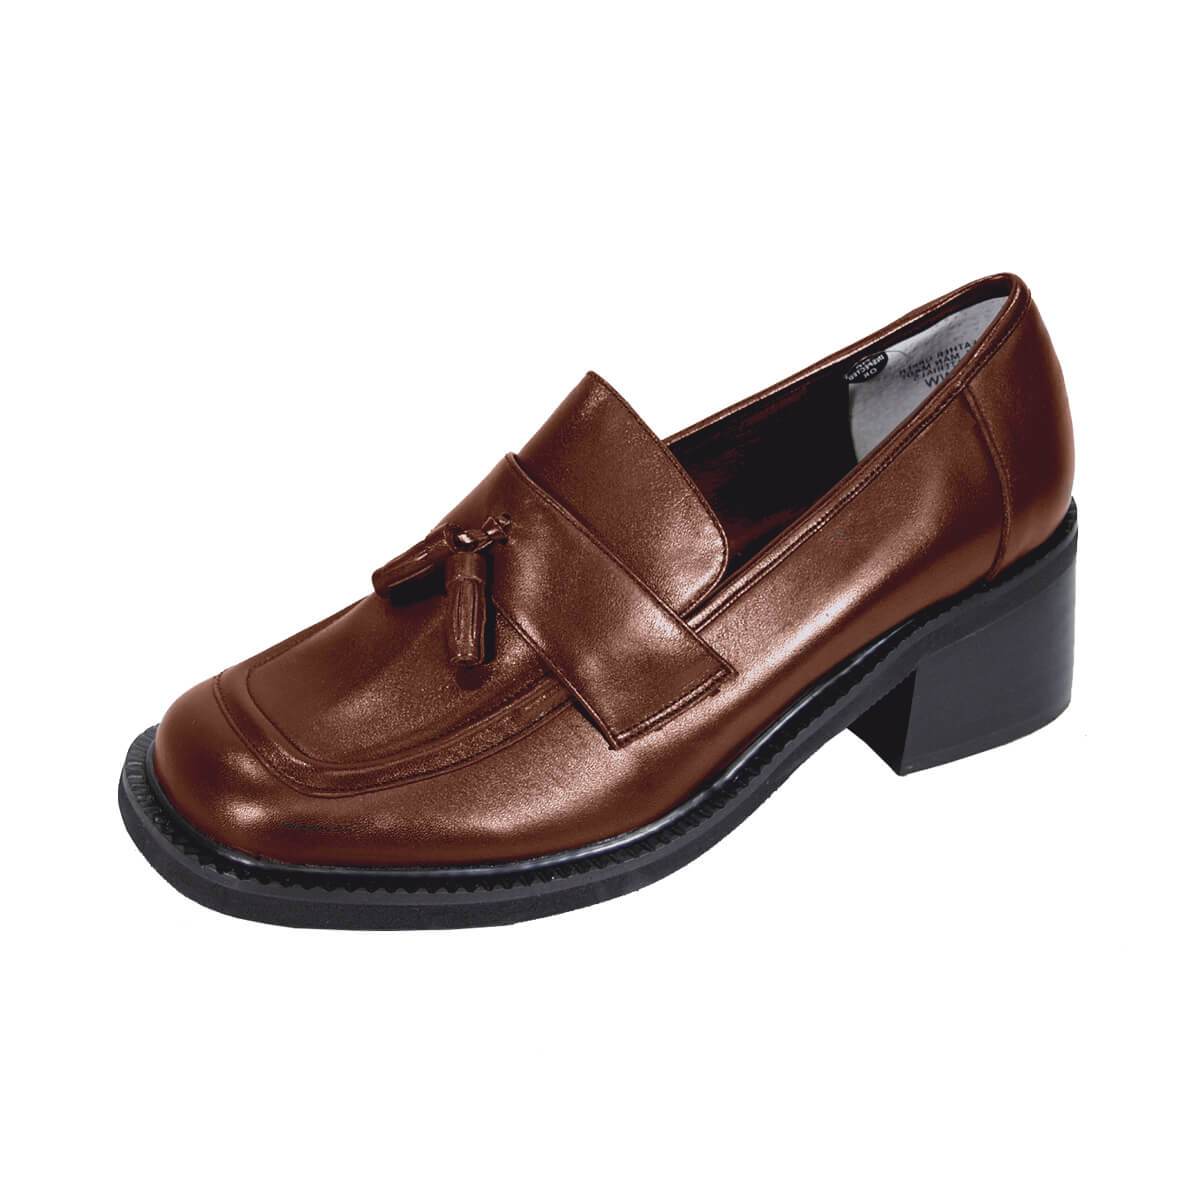 PEERAGE Rhona Women's Wide Width Tassel Leather Shoes